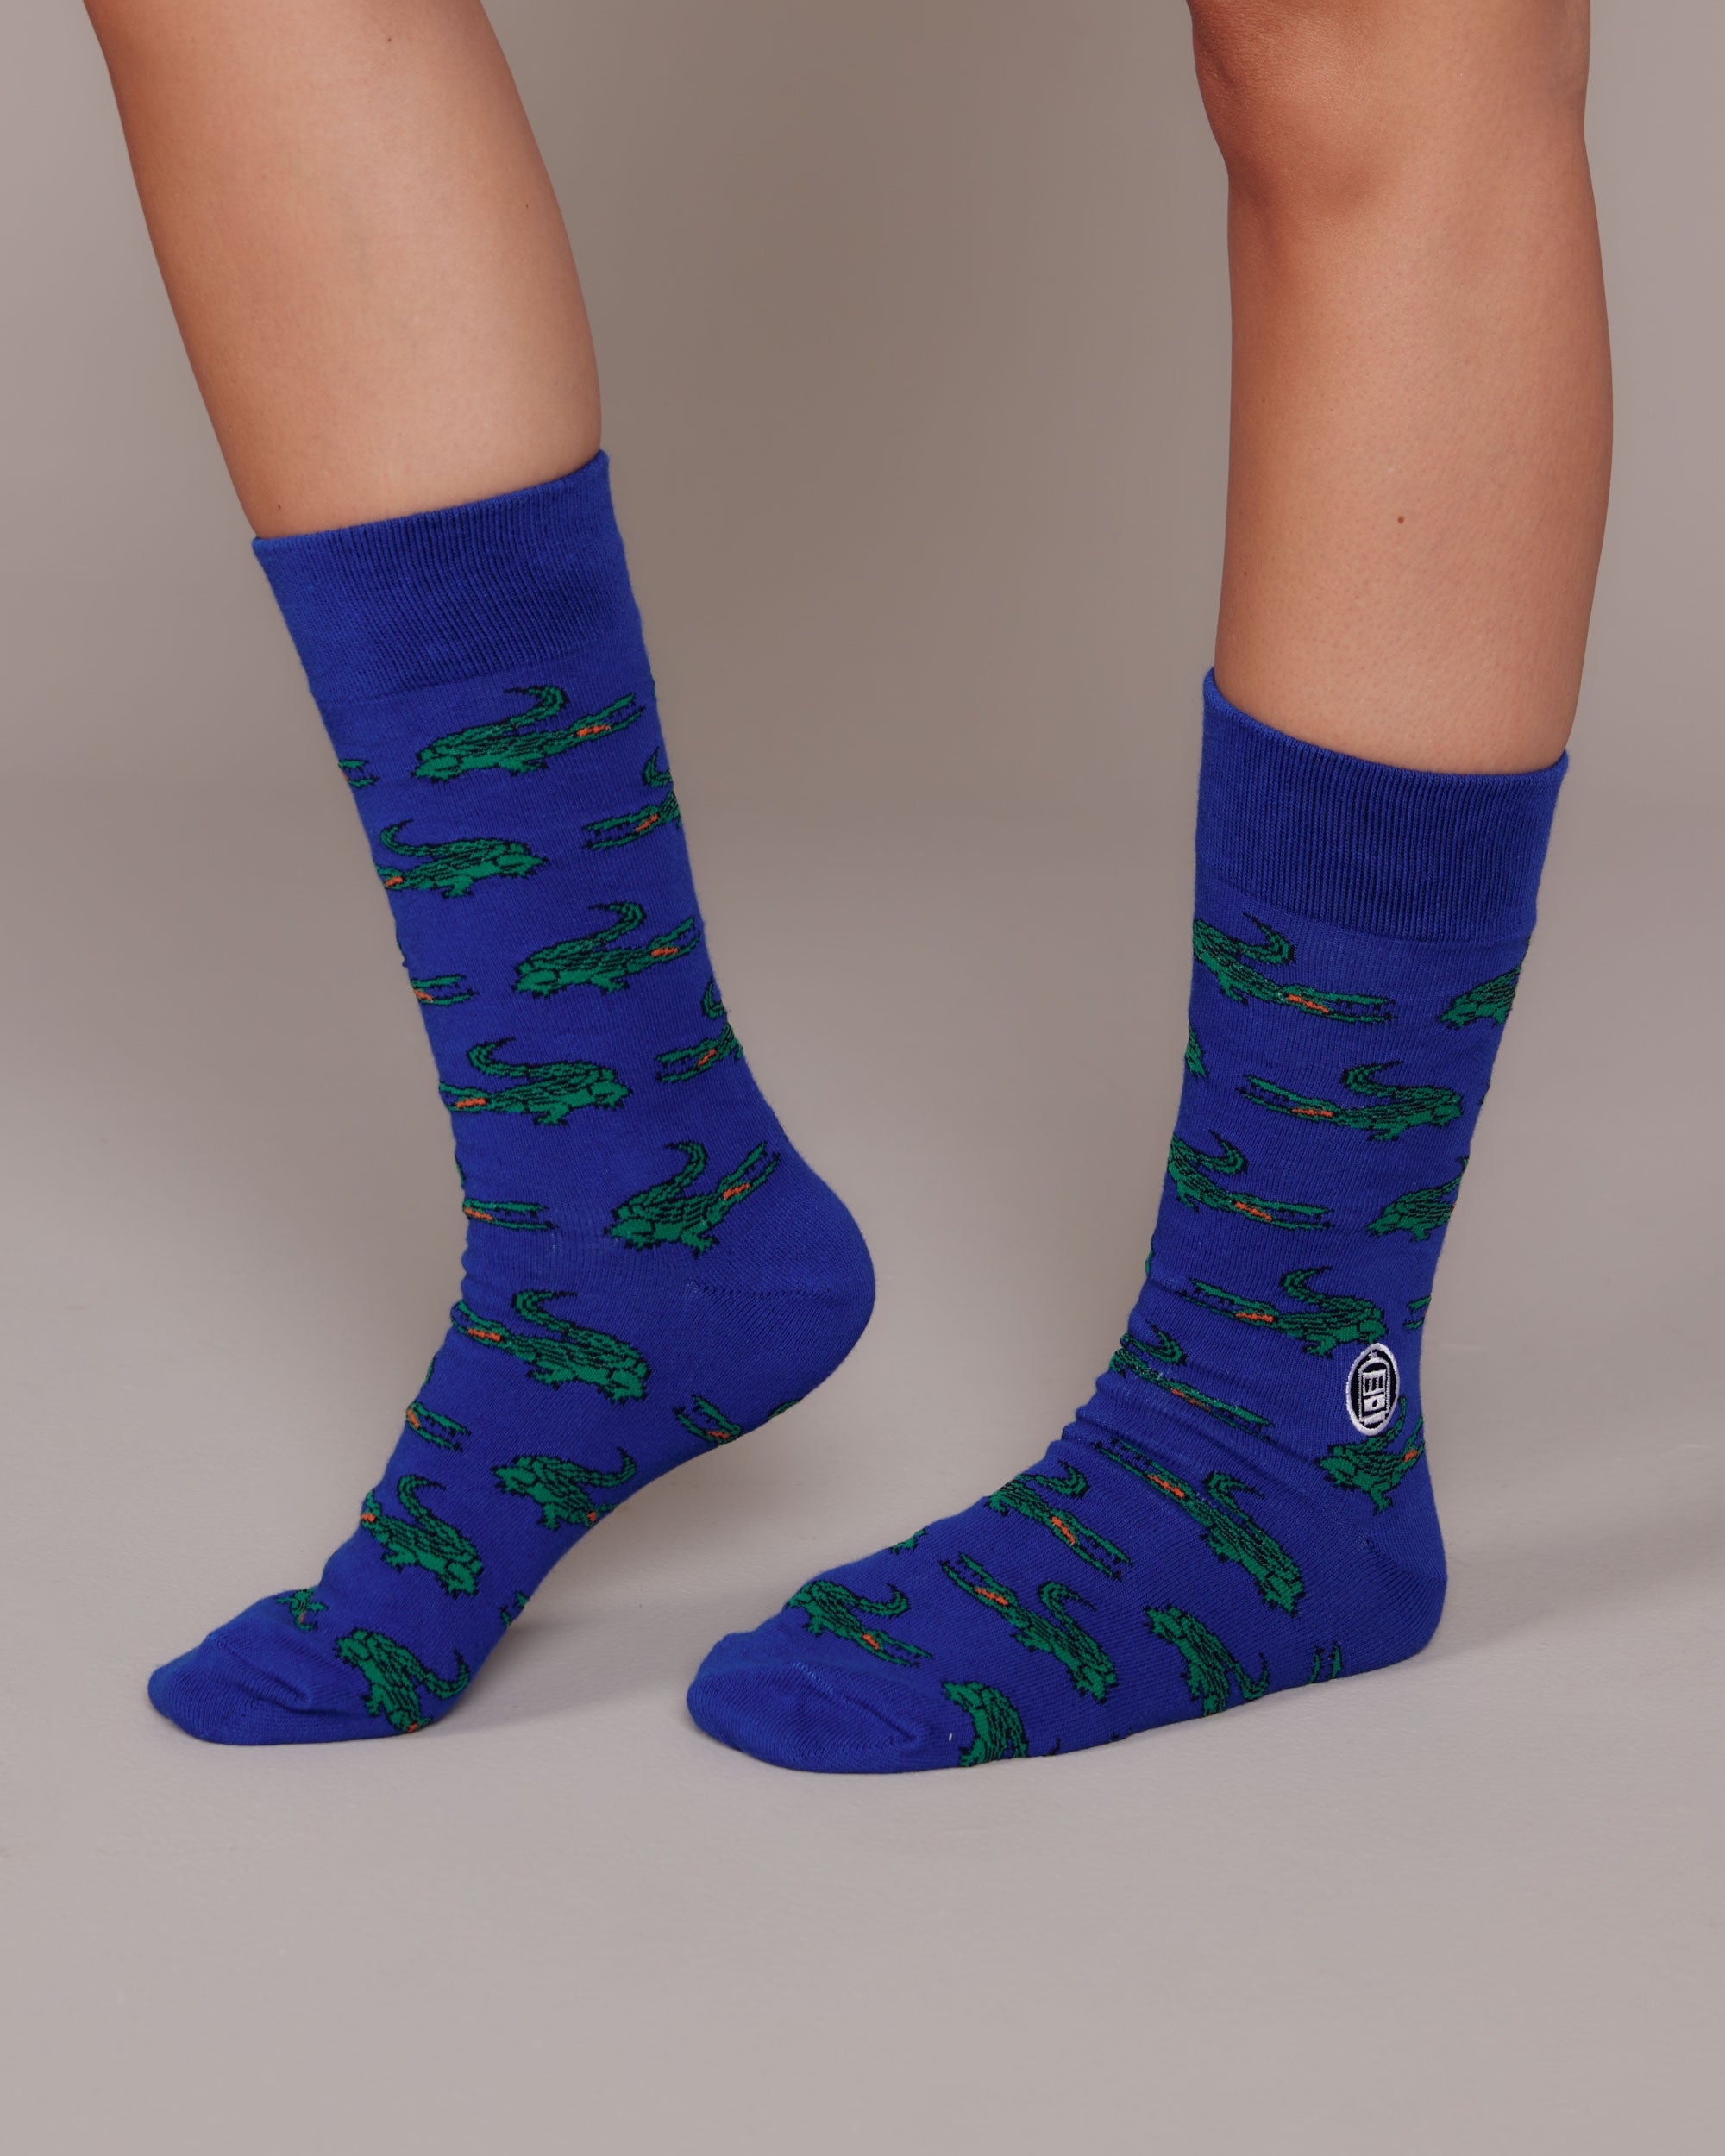 Potato Vog Socks - Green/Blue, Star swirl sock